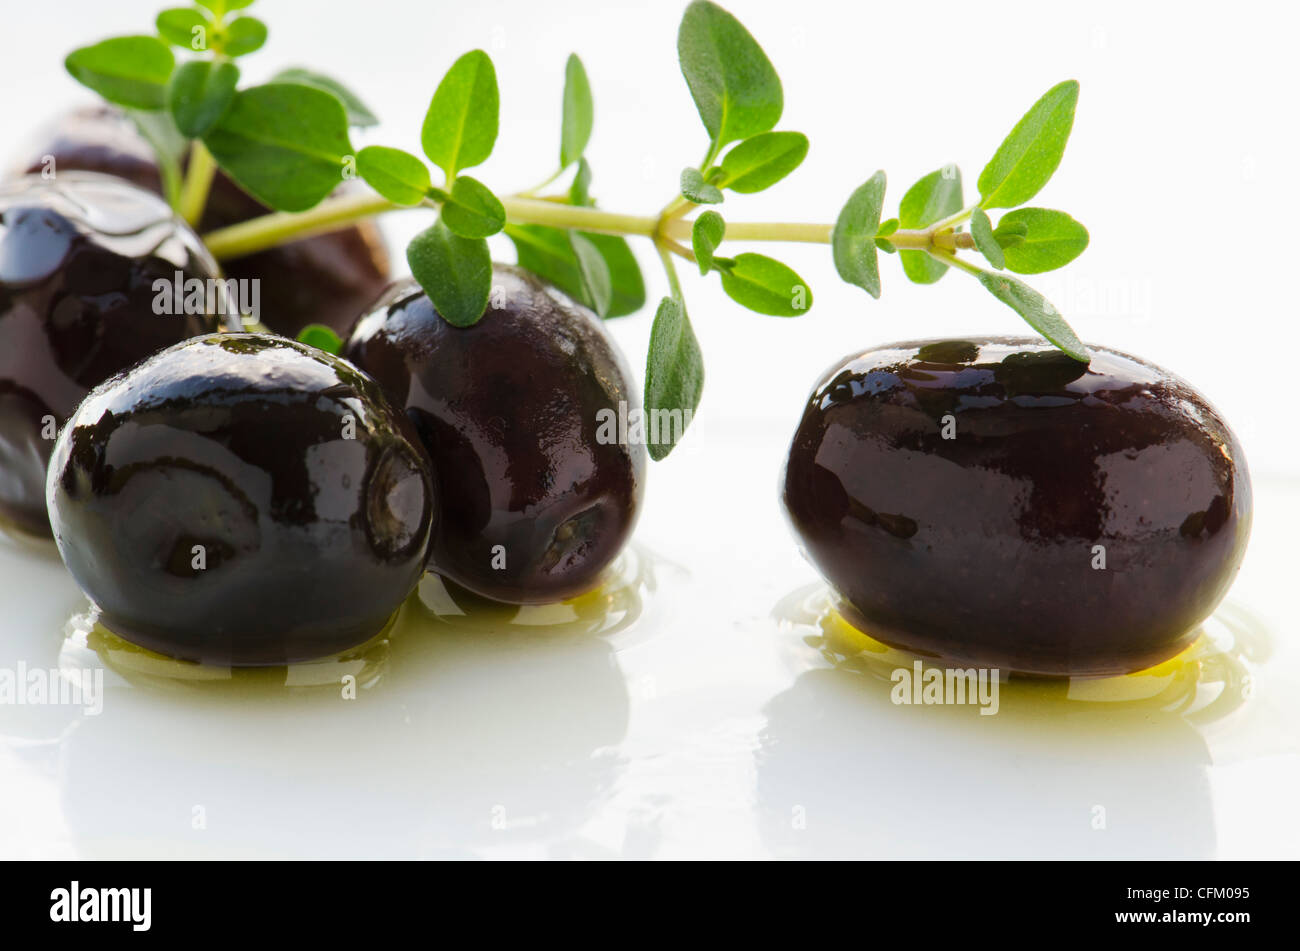 Close-up des olives noires avec thym frais, studio shot Banque D'Images